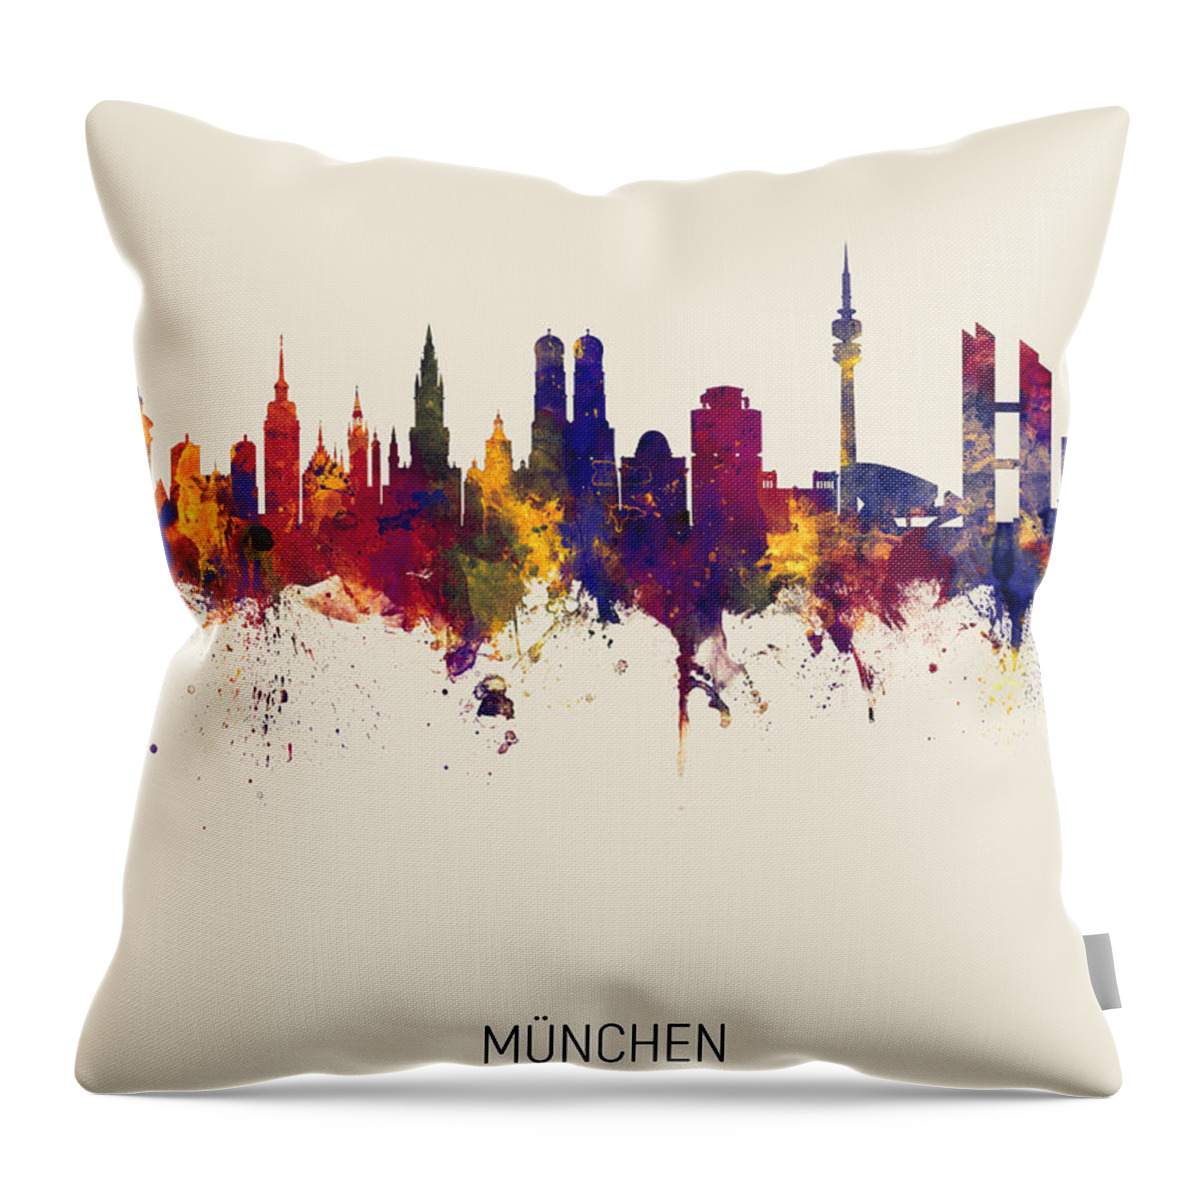 Munich Throw Pillow featuring the digital art Munich Germany Skyline #15 by Michael Tompsett